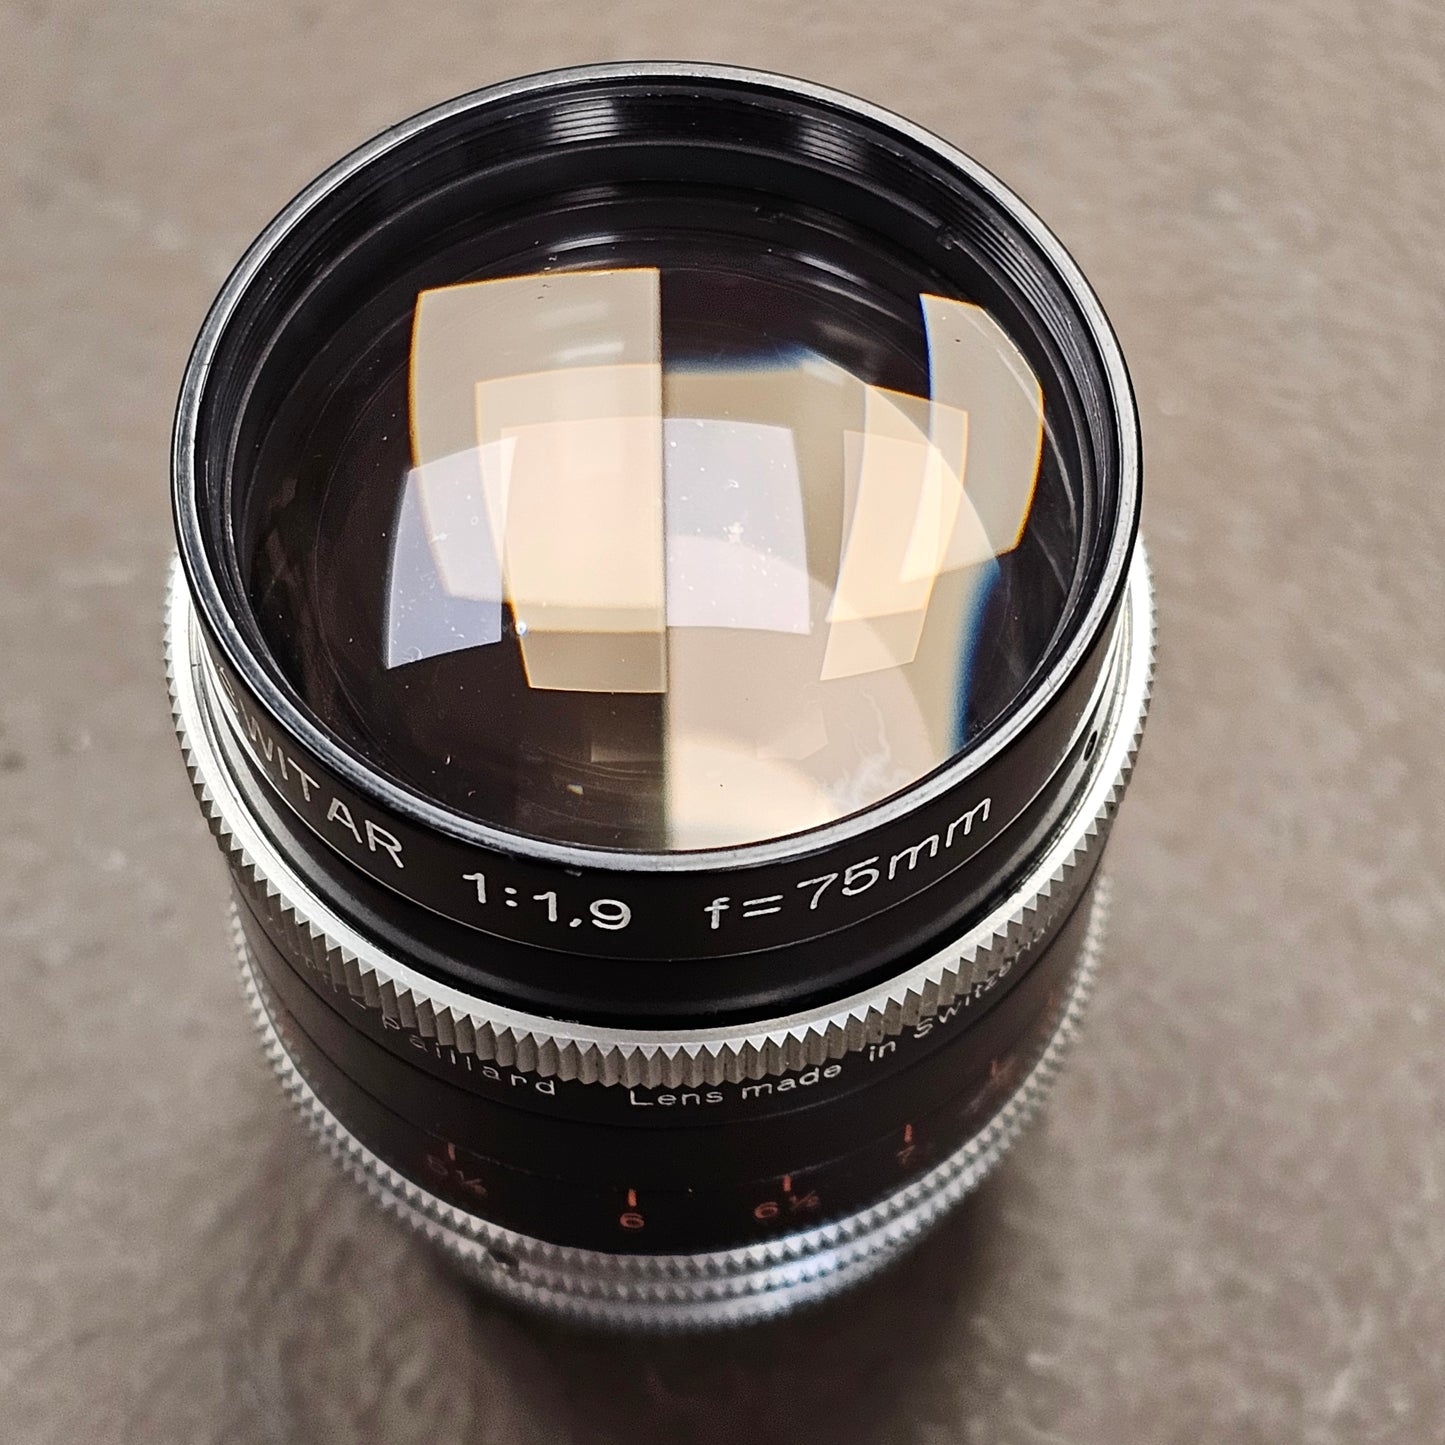 Switar 75mm f1.9 C-Mount Lens S# 1028546